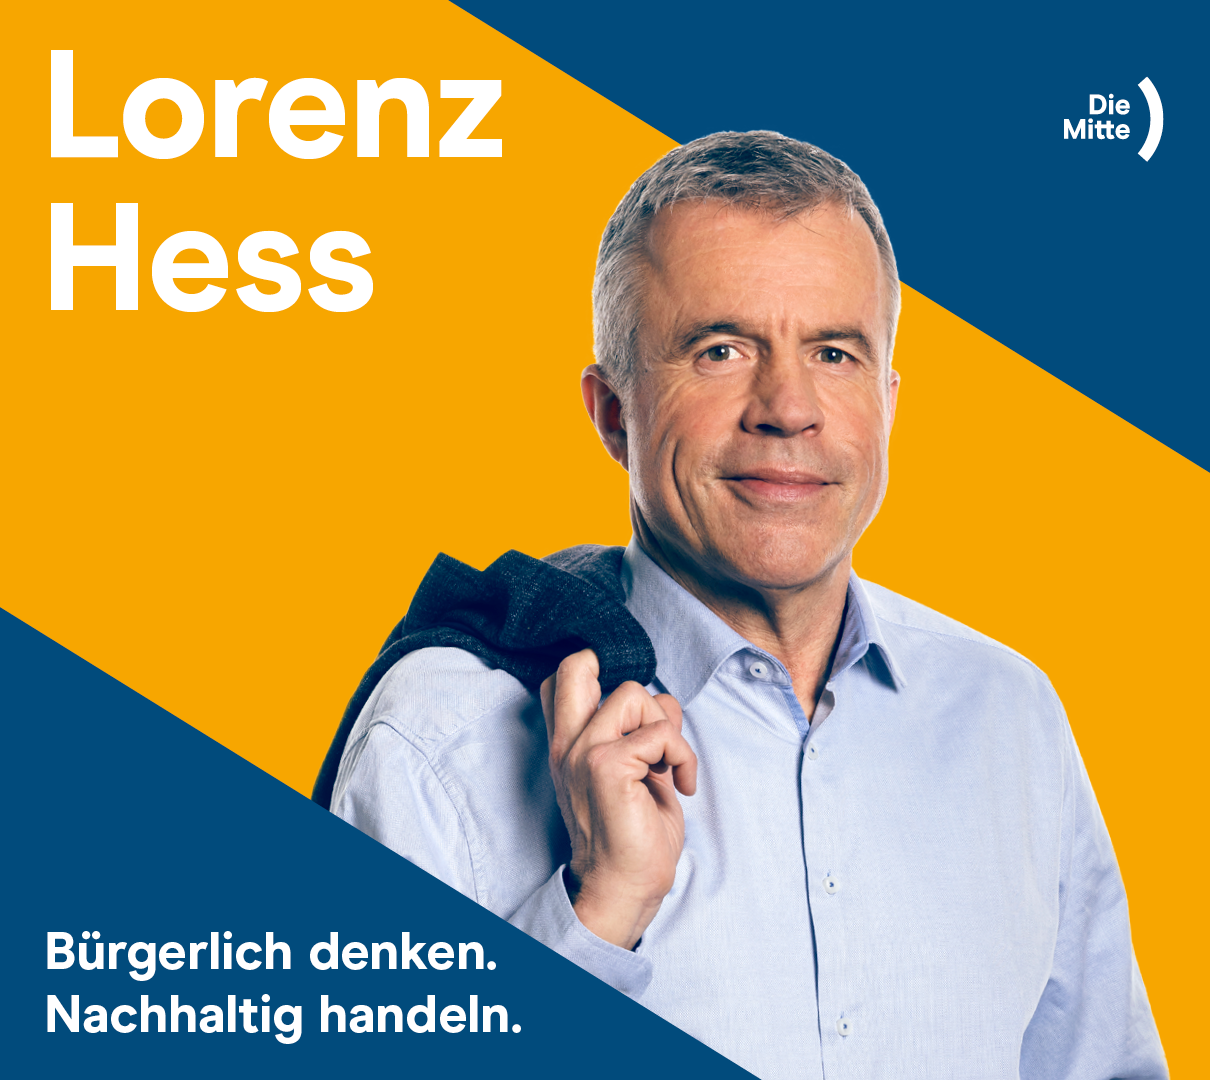 Lorenz Hess - Die Mitte